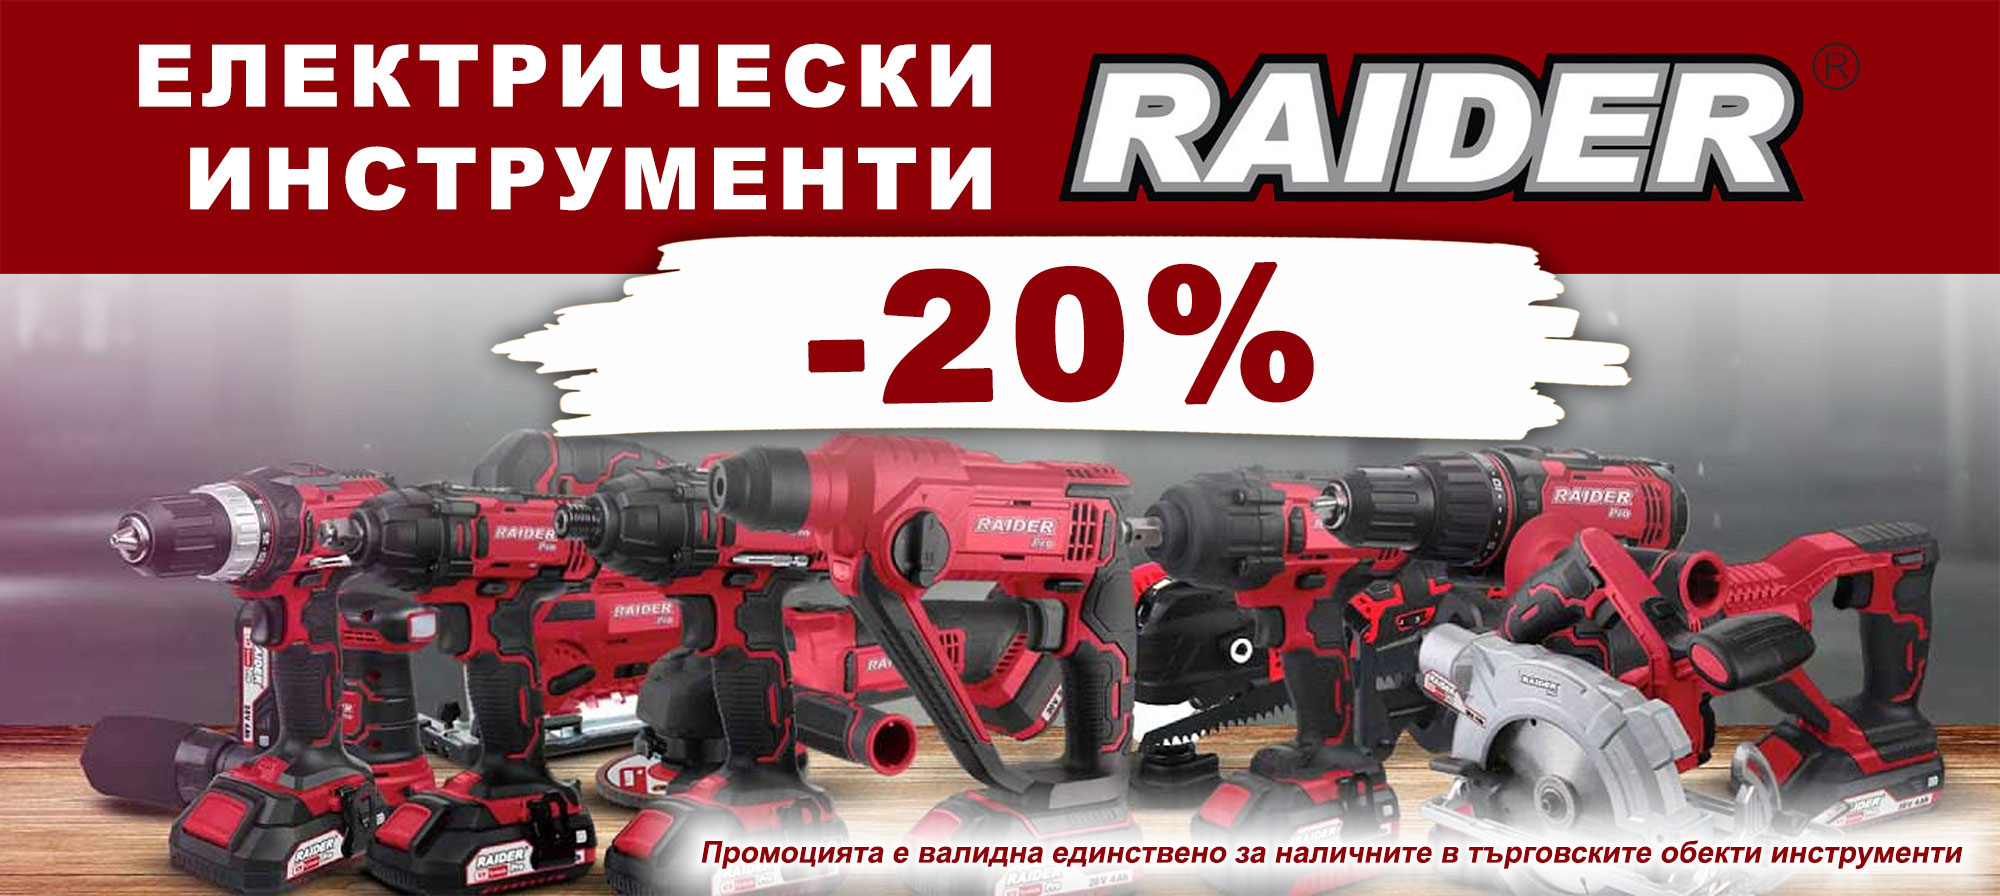 Електрически инструменти RAIDER с 20% отстъпка